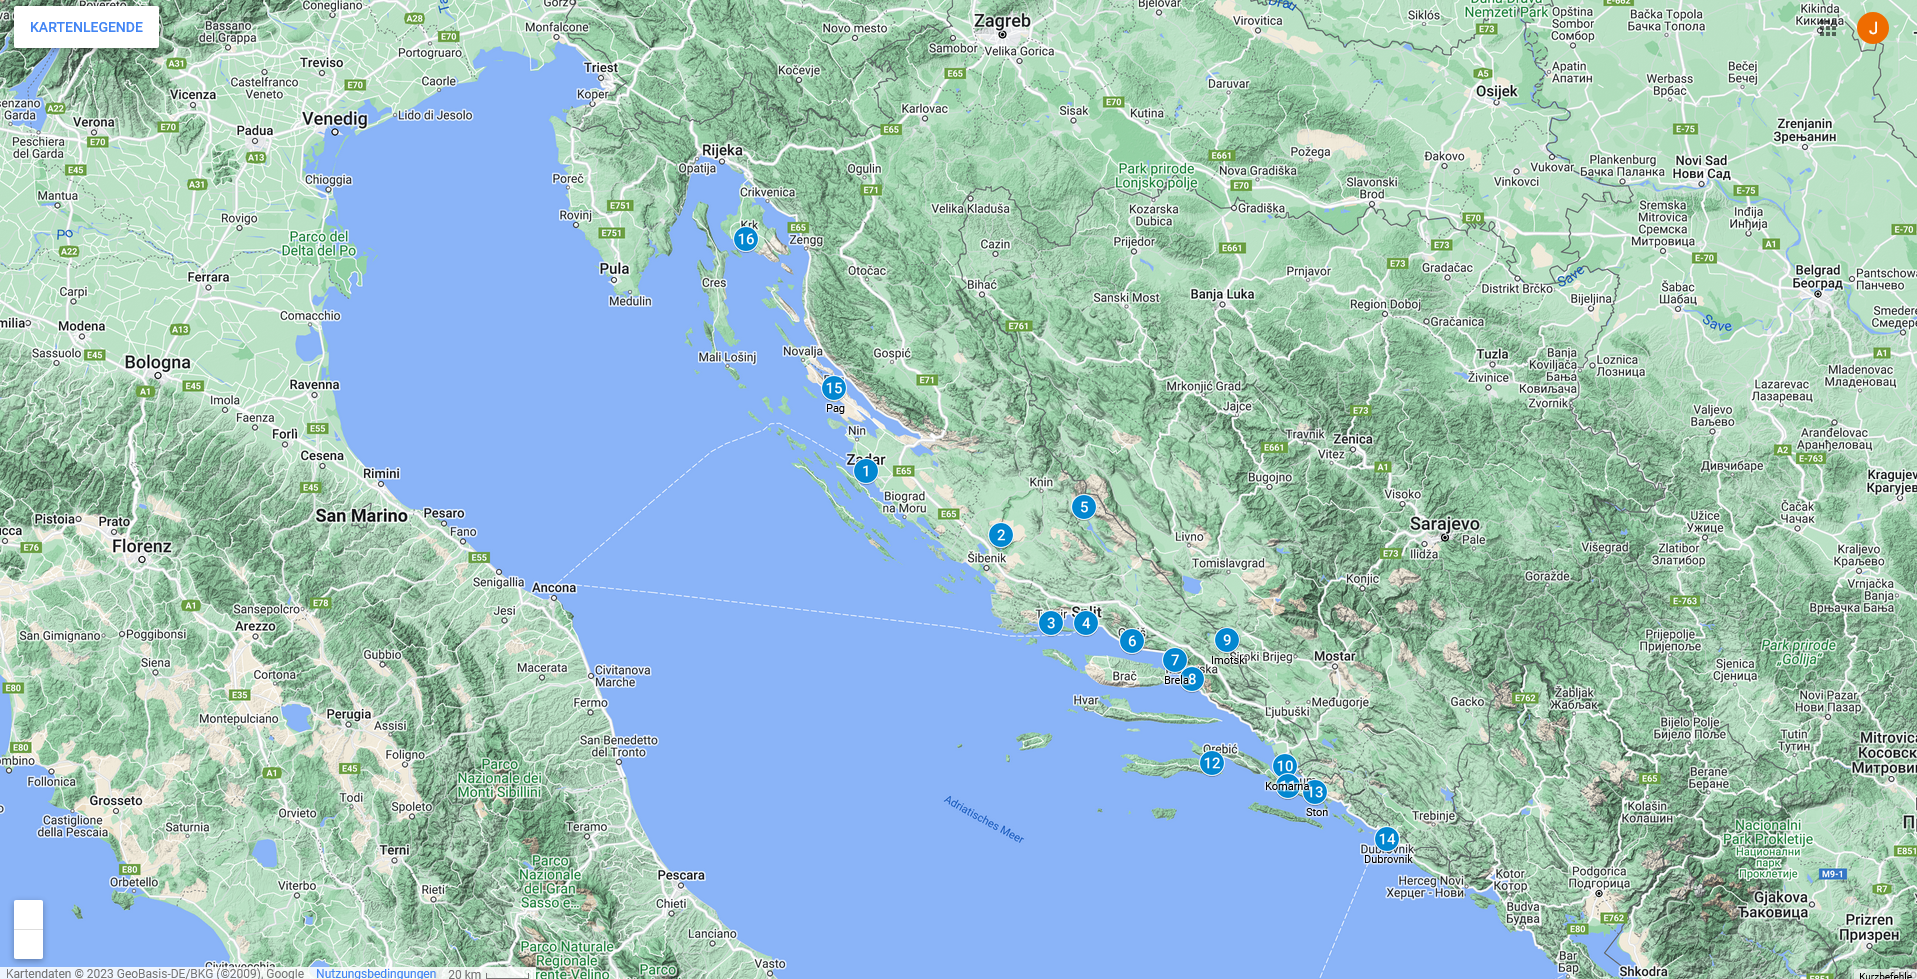 Reiseroute Dalmatien auf der Google Landkarte